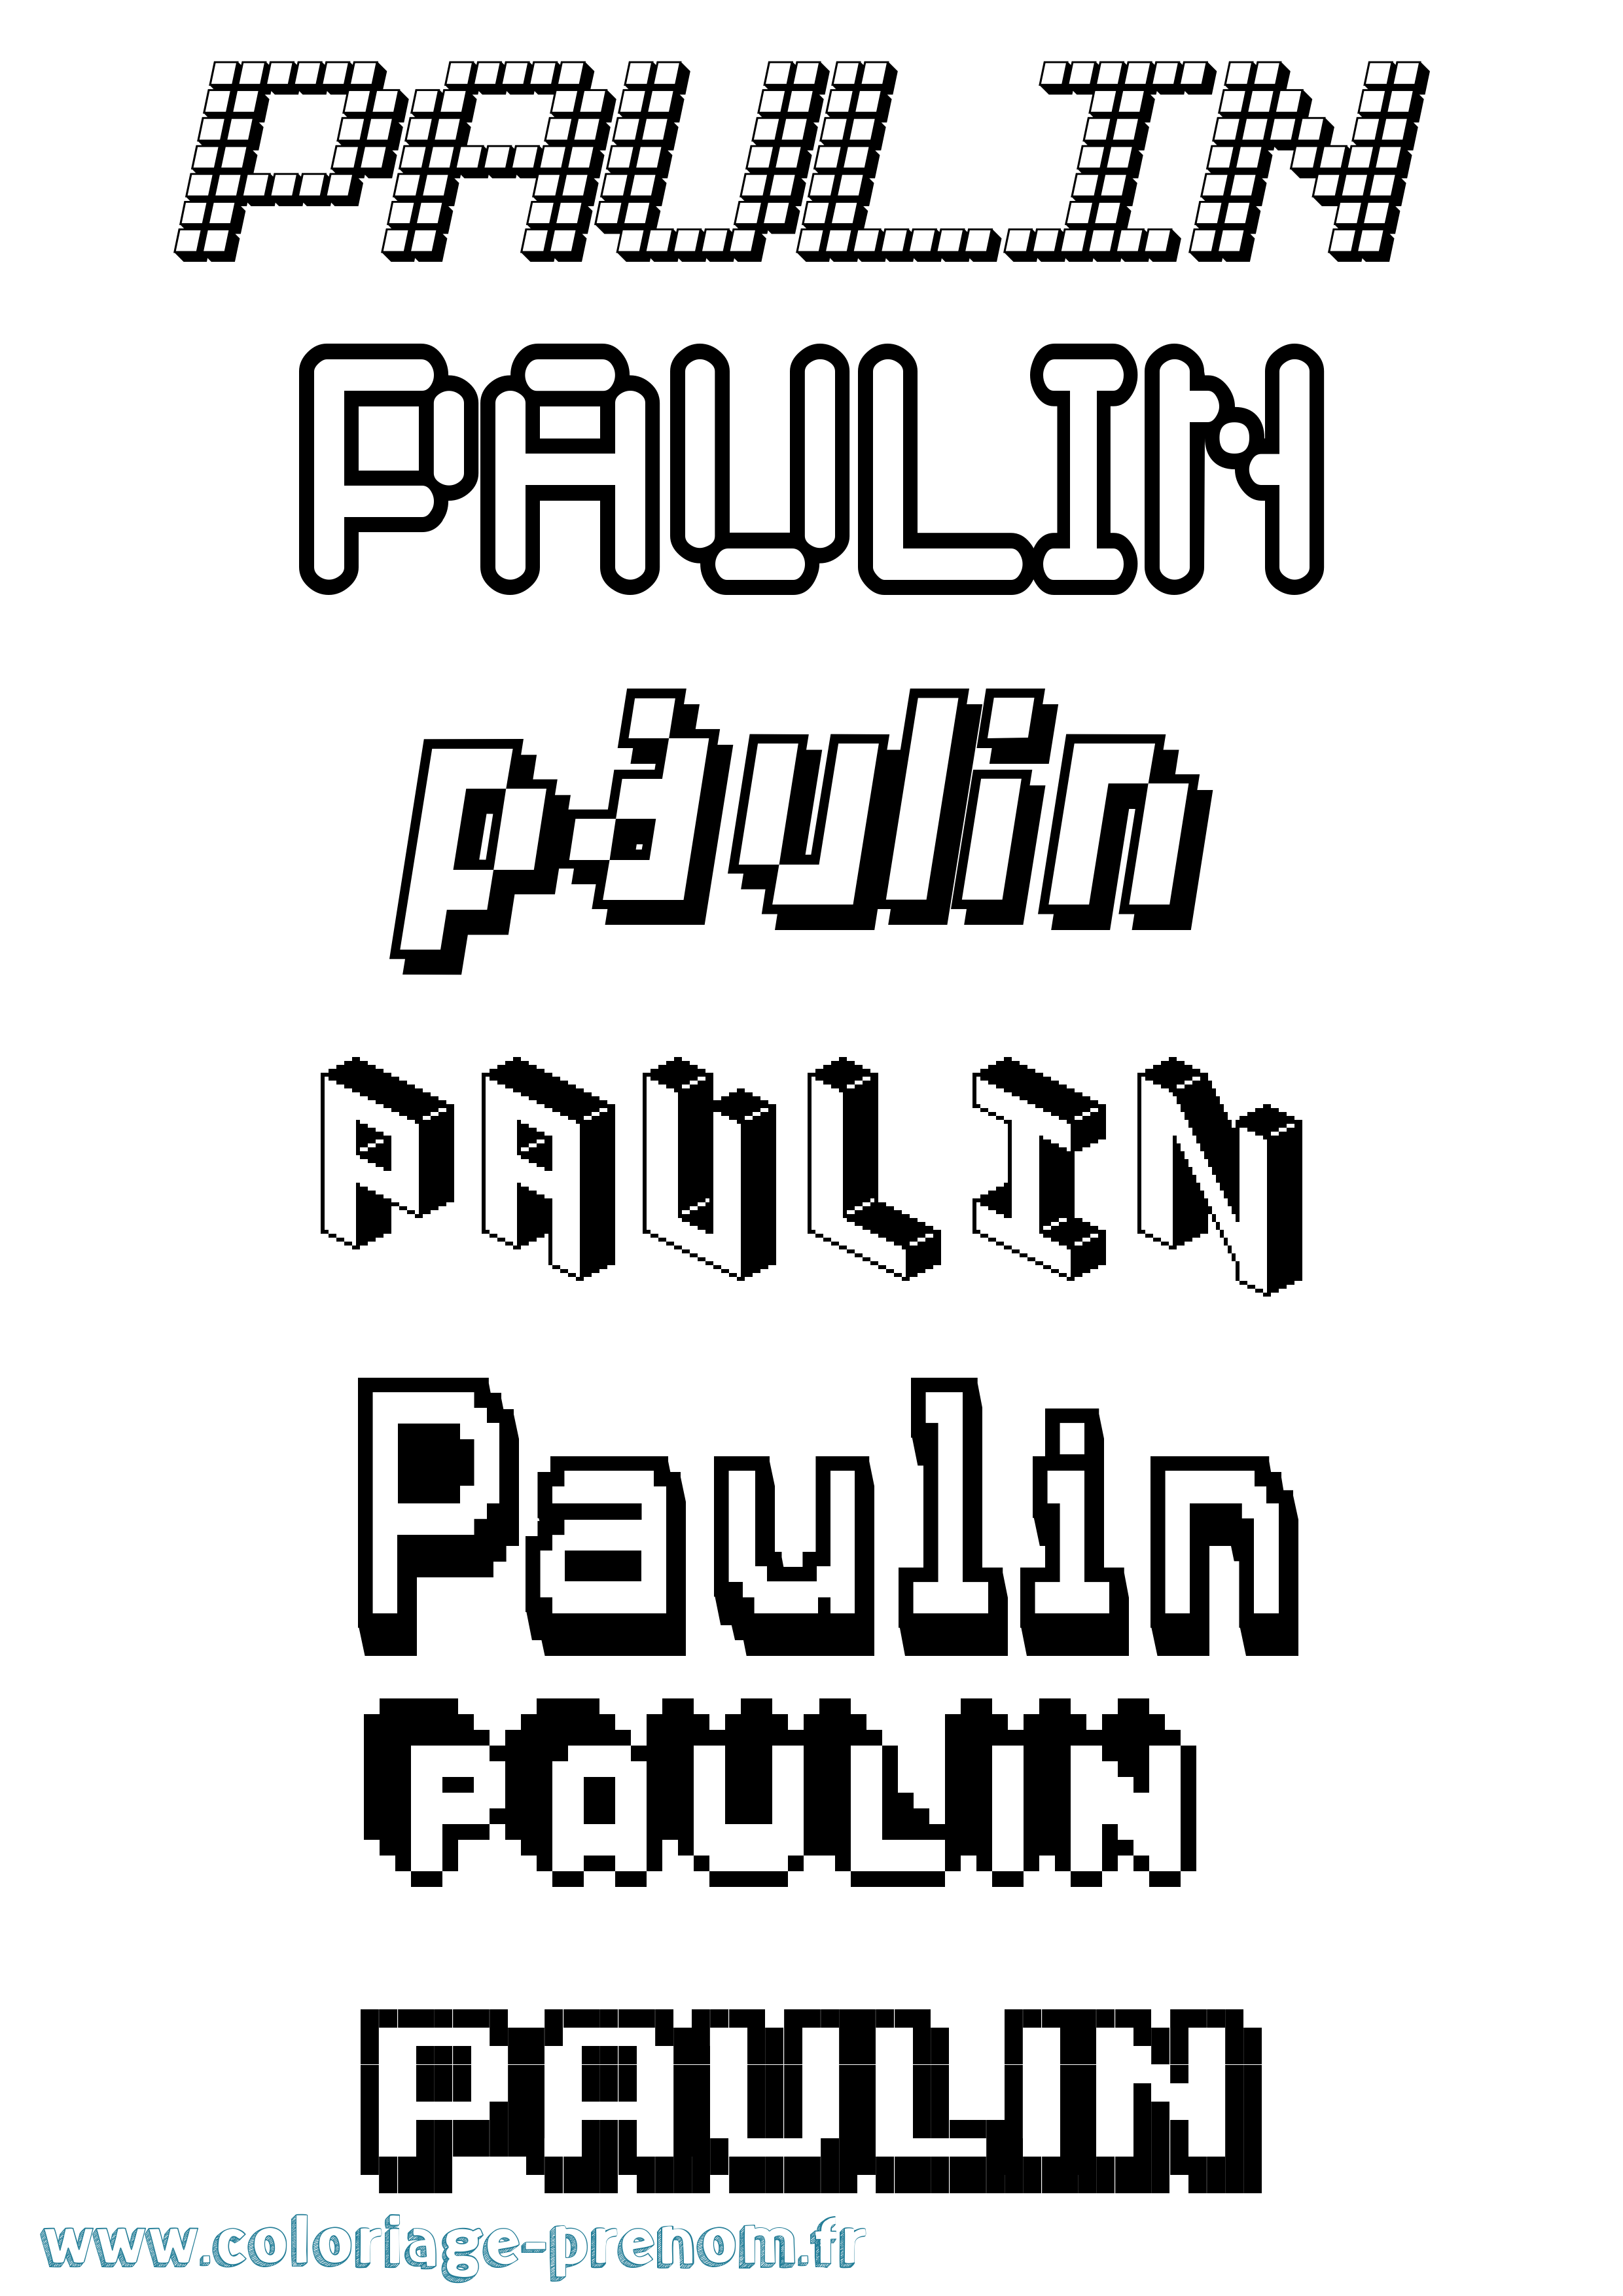 Coloriage prénom Paulin